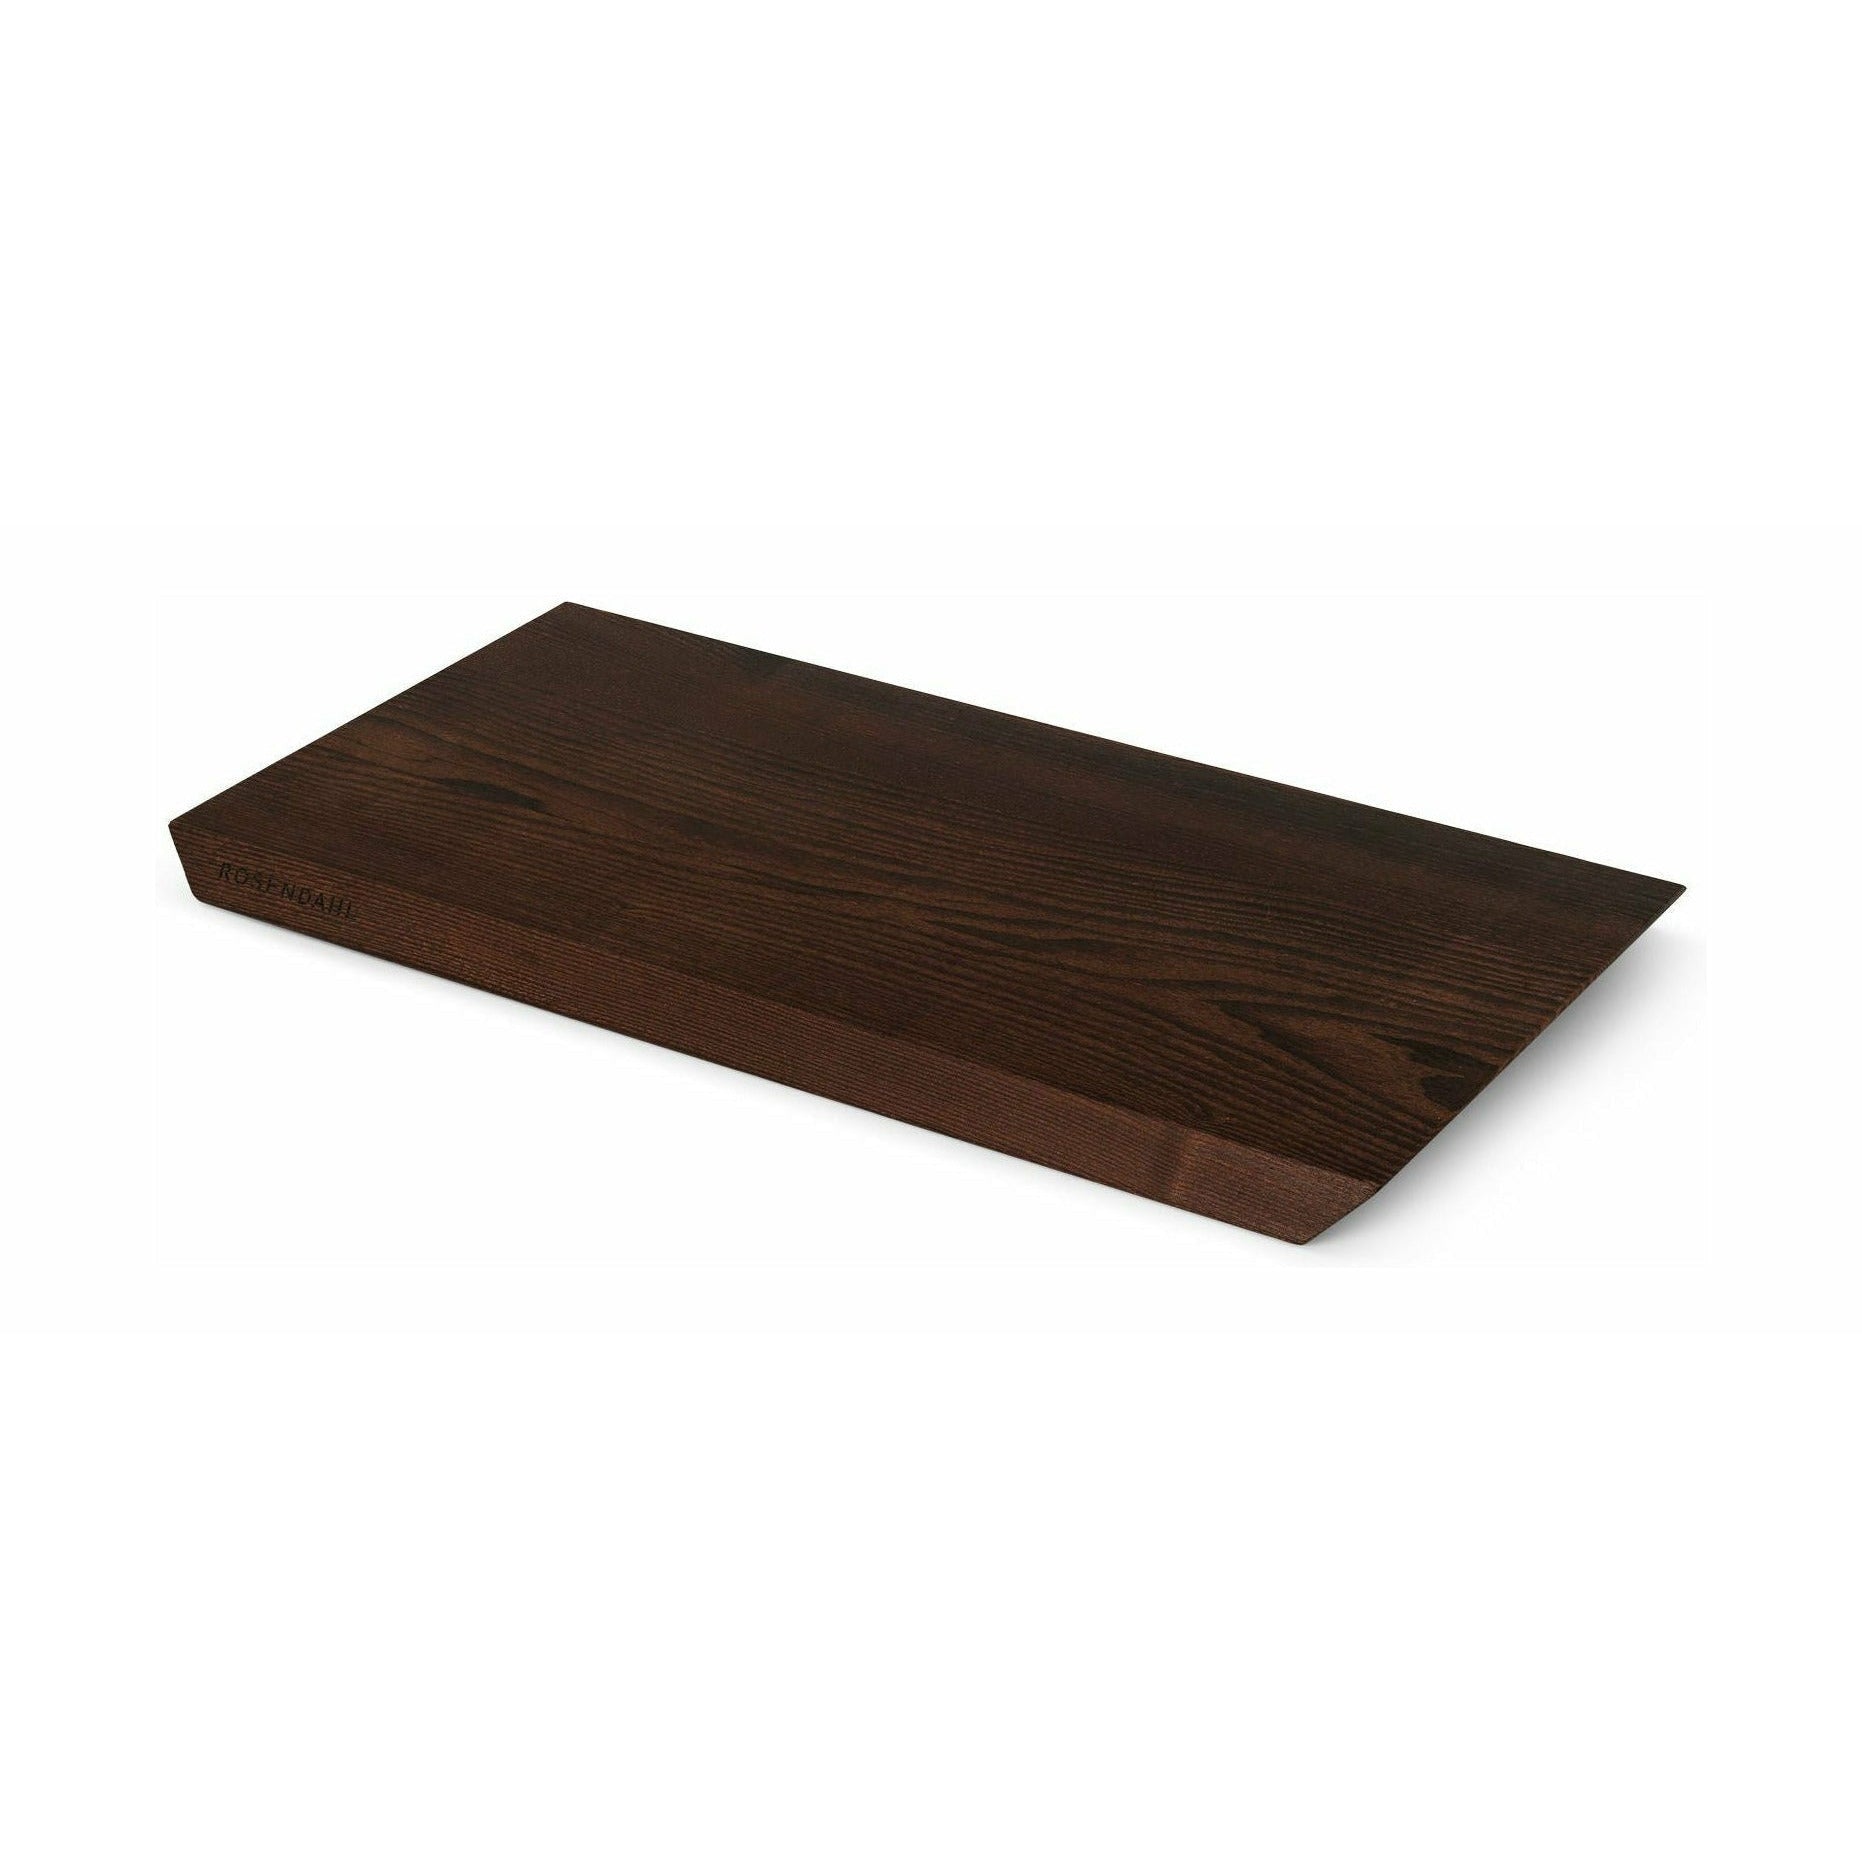 Rosendahl Rå Cutting Board Oaklived, 28x51 cm